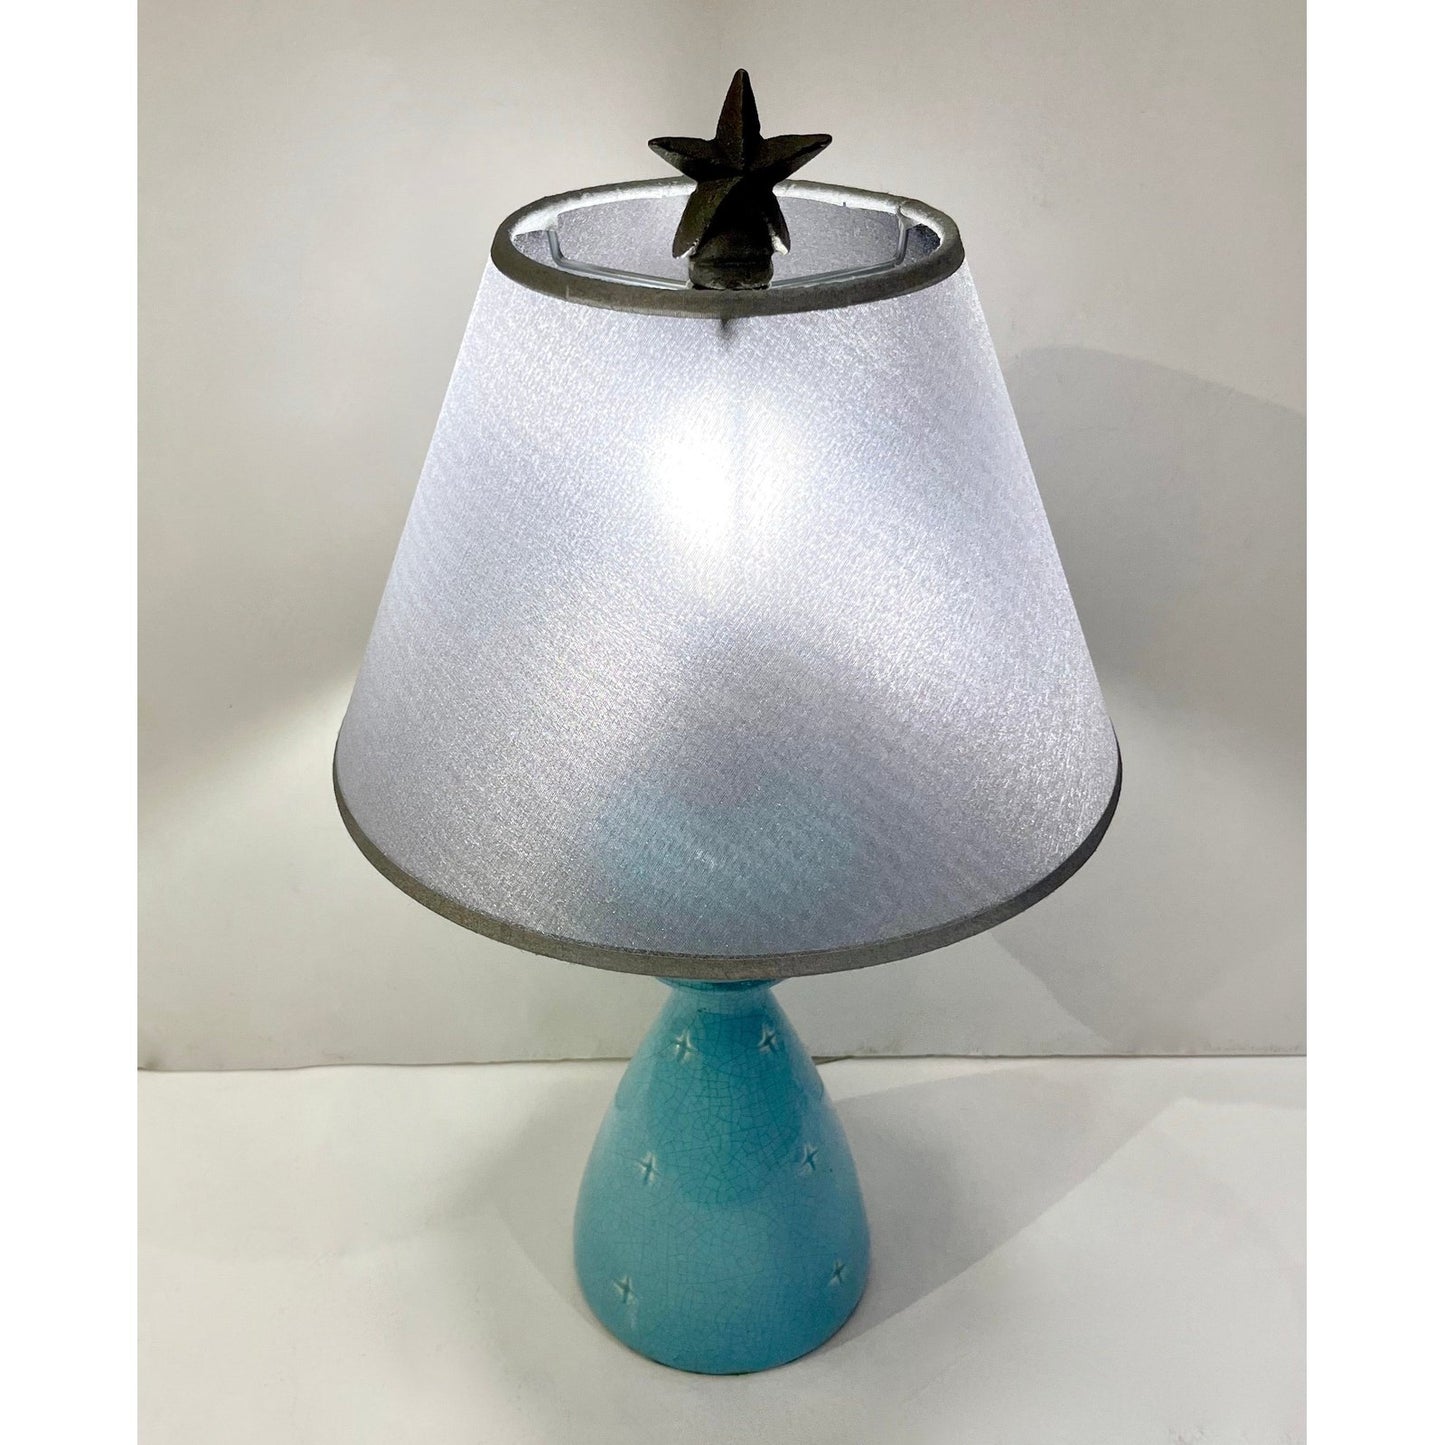 1960s French Pair of Aquamarine Blue Craquelure Glaze Ceramic Lamps with Stars